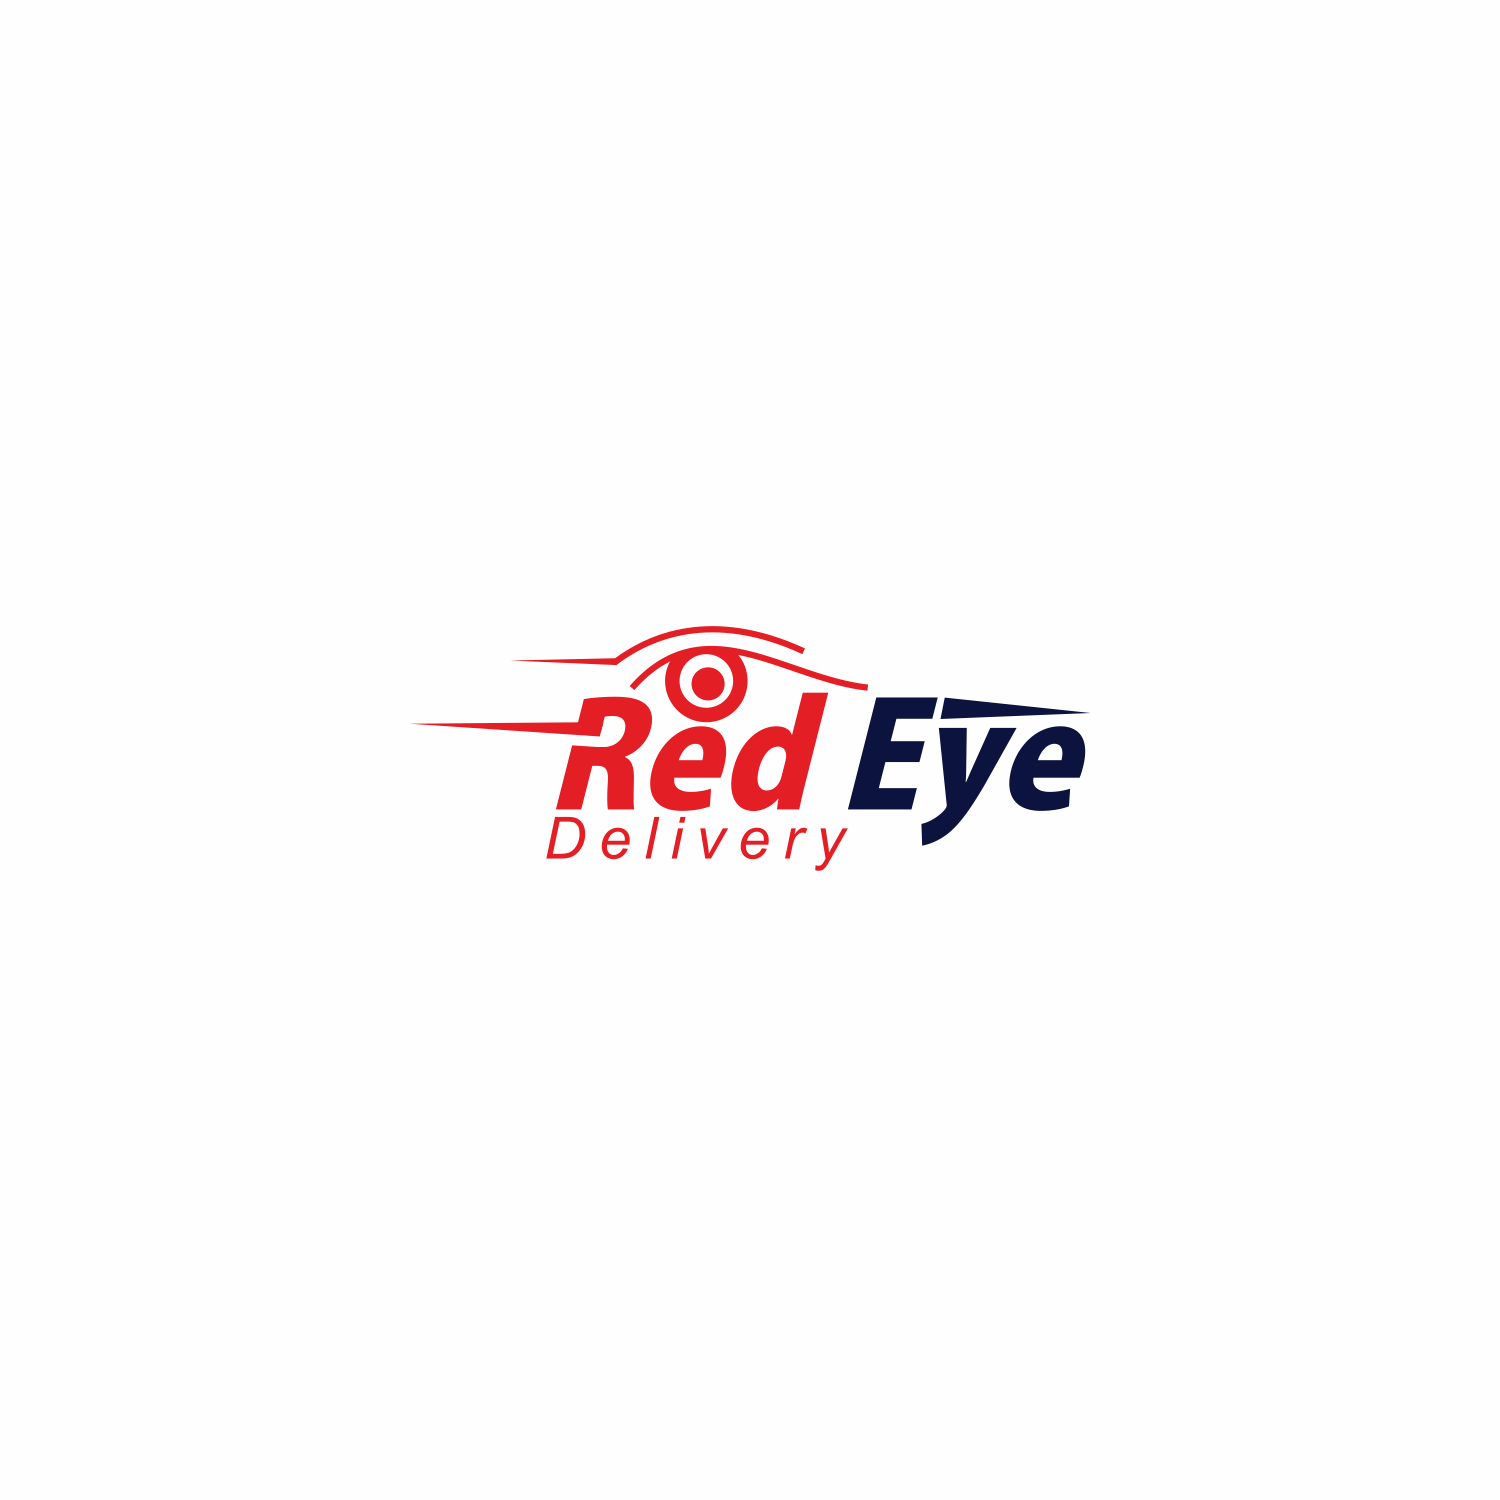 Red Eye Logo - Elegant, Modern, Delivery Service Logo Design for Red Eye Delivery ...